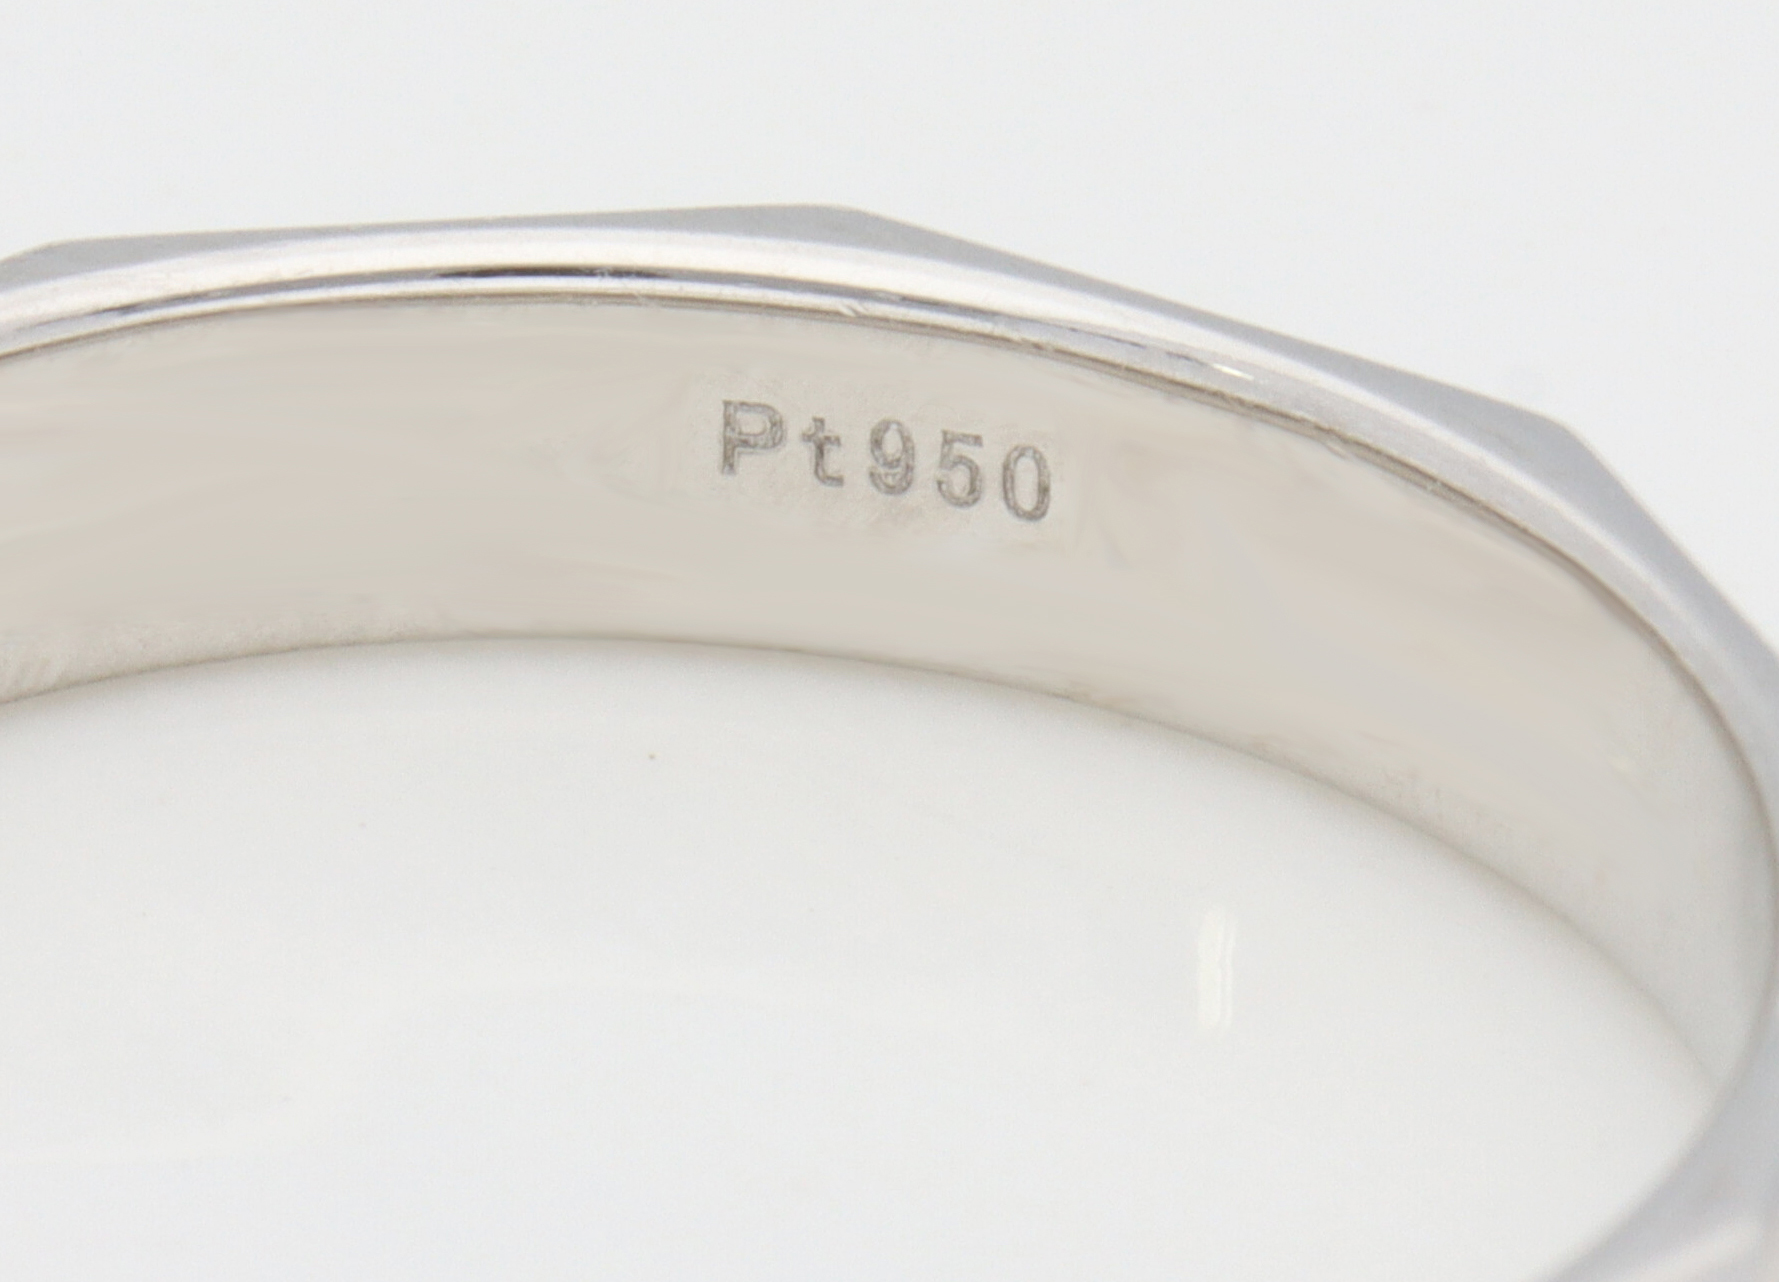 PT950の刻印がある鍛造指輪の写真